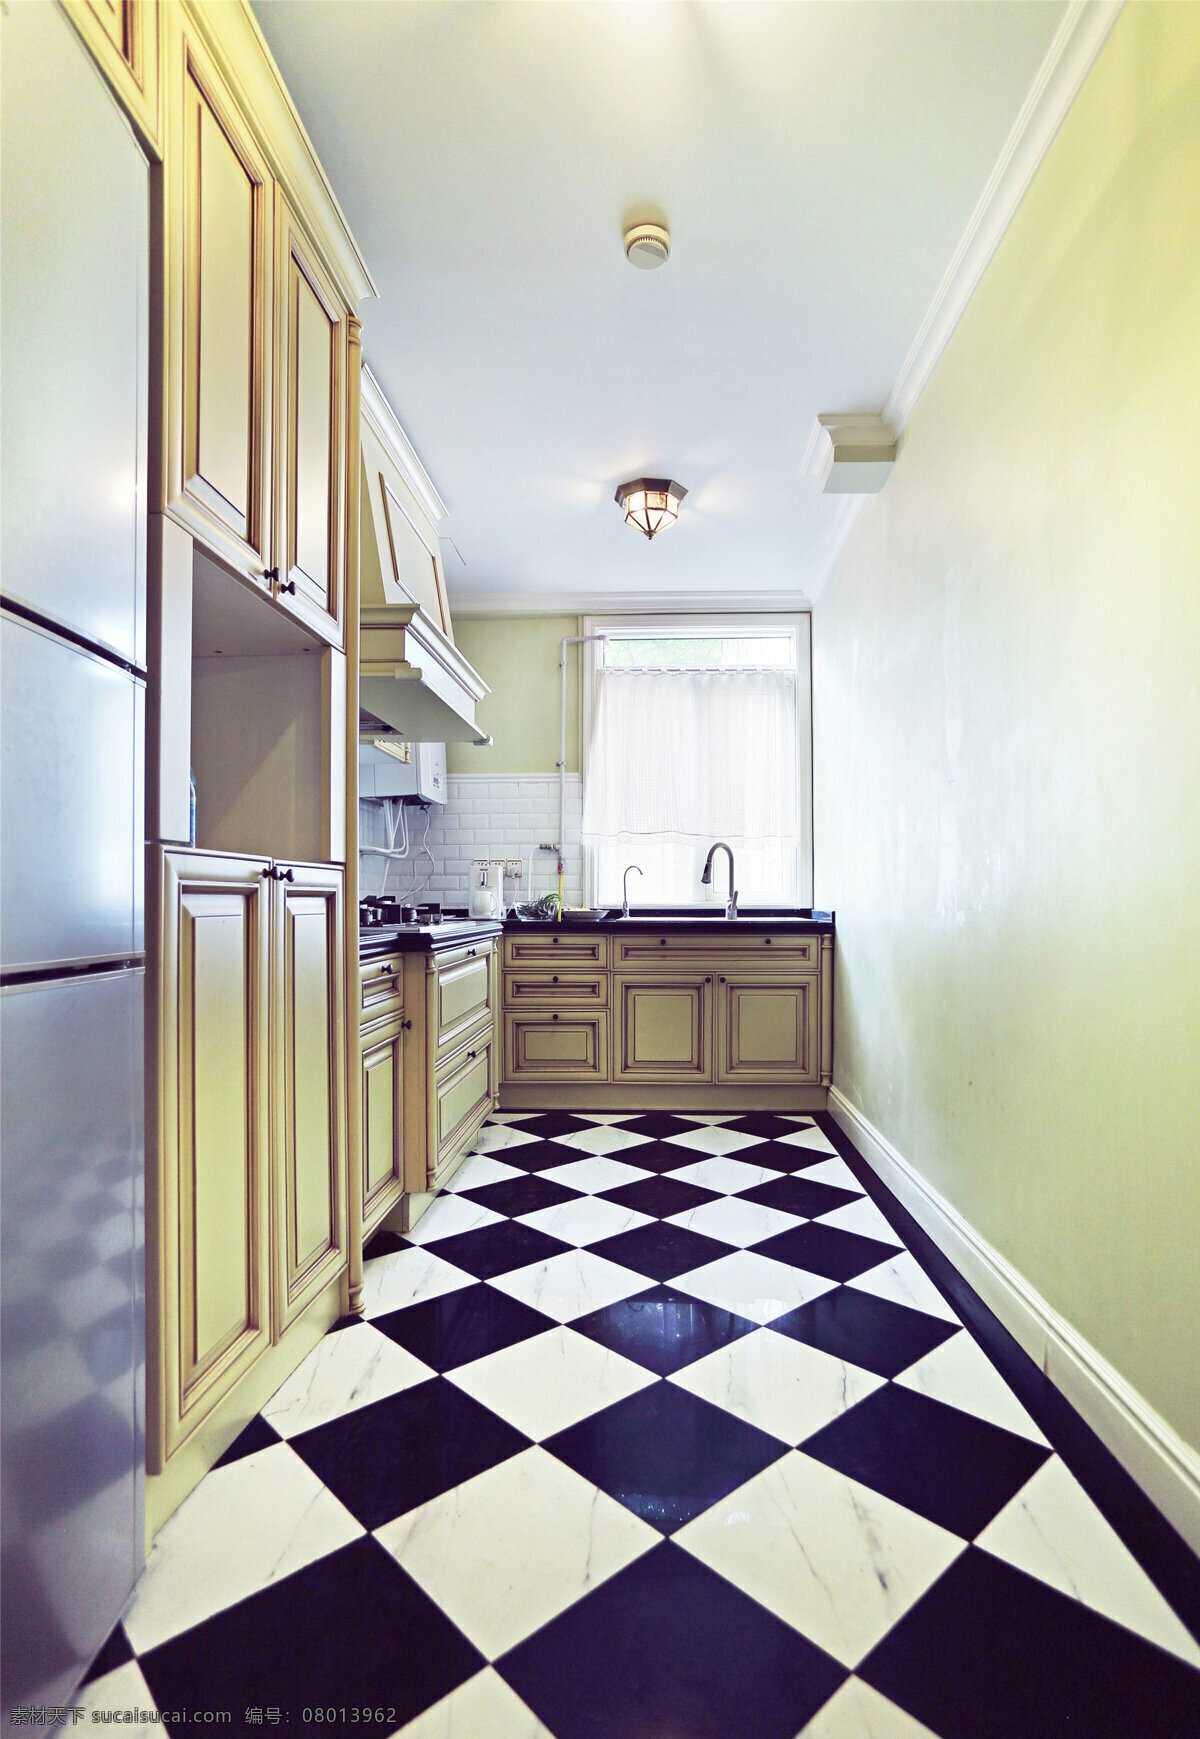 简约 风 室内设计 厨房 收纳柜 效果图 现代 料理台 菱形 地砖 洗菜池 壁柜 家装